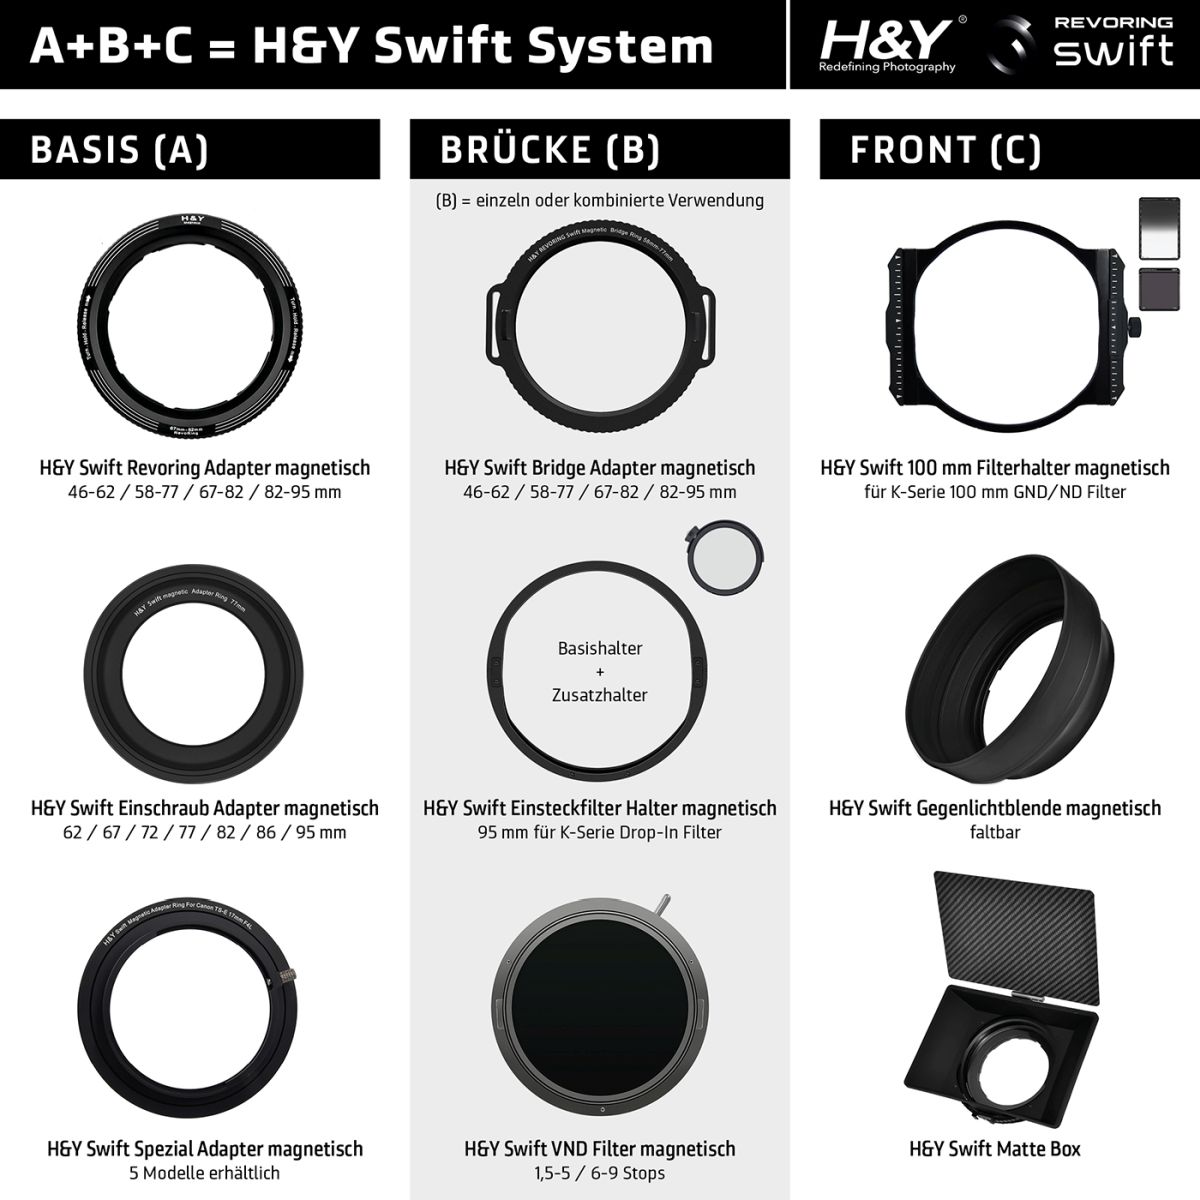 H&Y Swift A 95 mm Einschraub-Adapter magnetisch